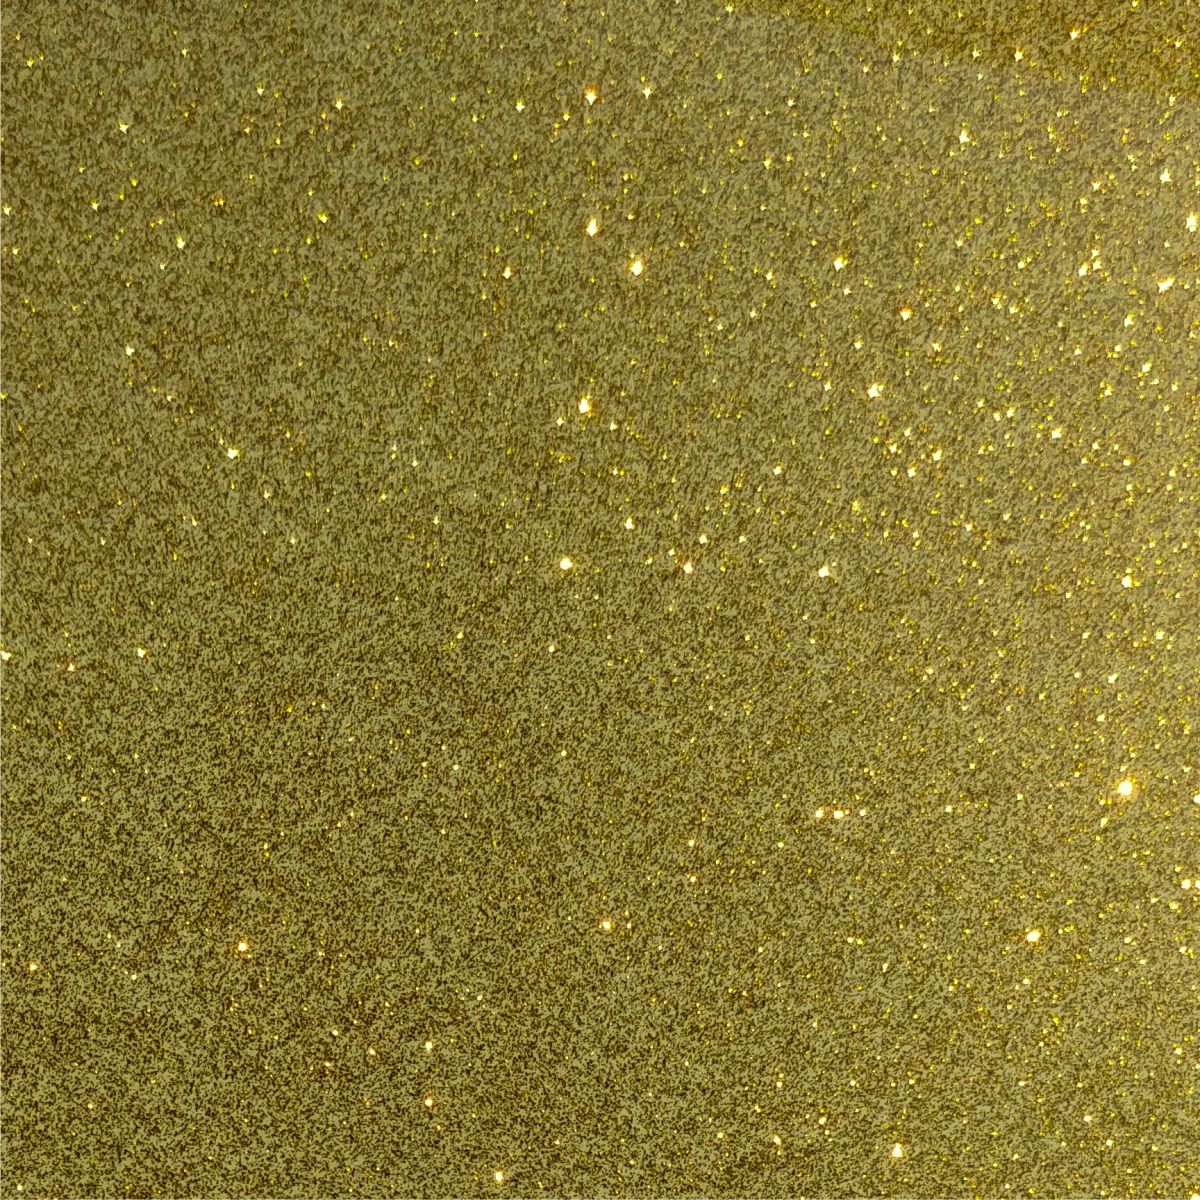 StyleTech Transparent Glitter Vegas Gold - CraftCutterSupply.com